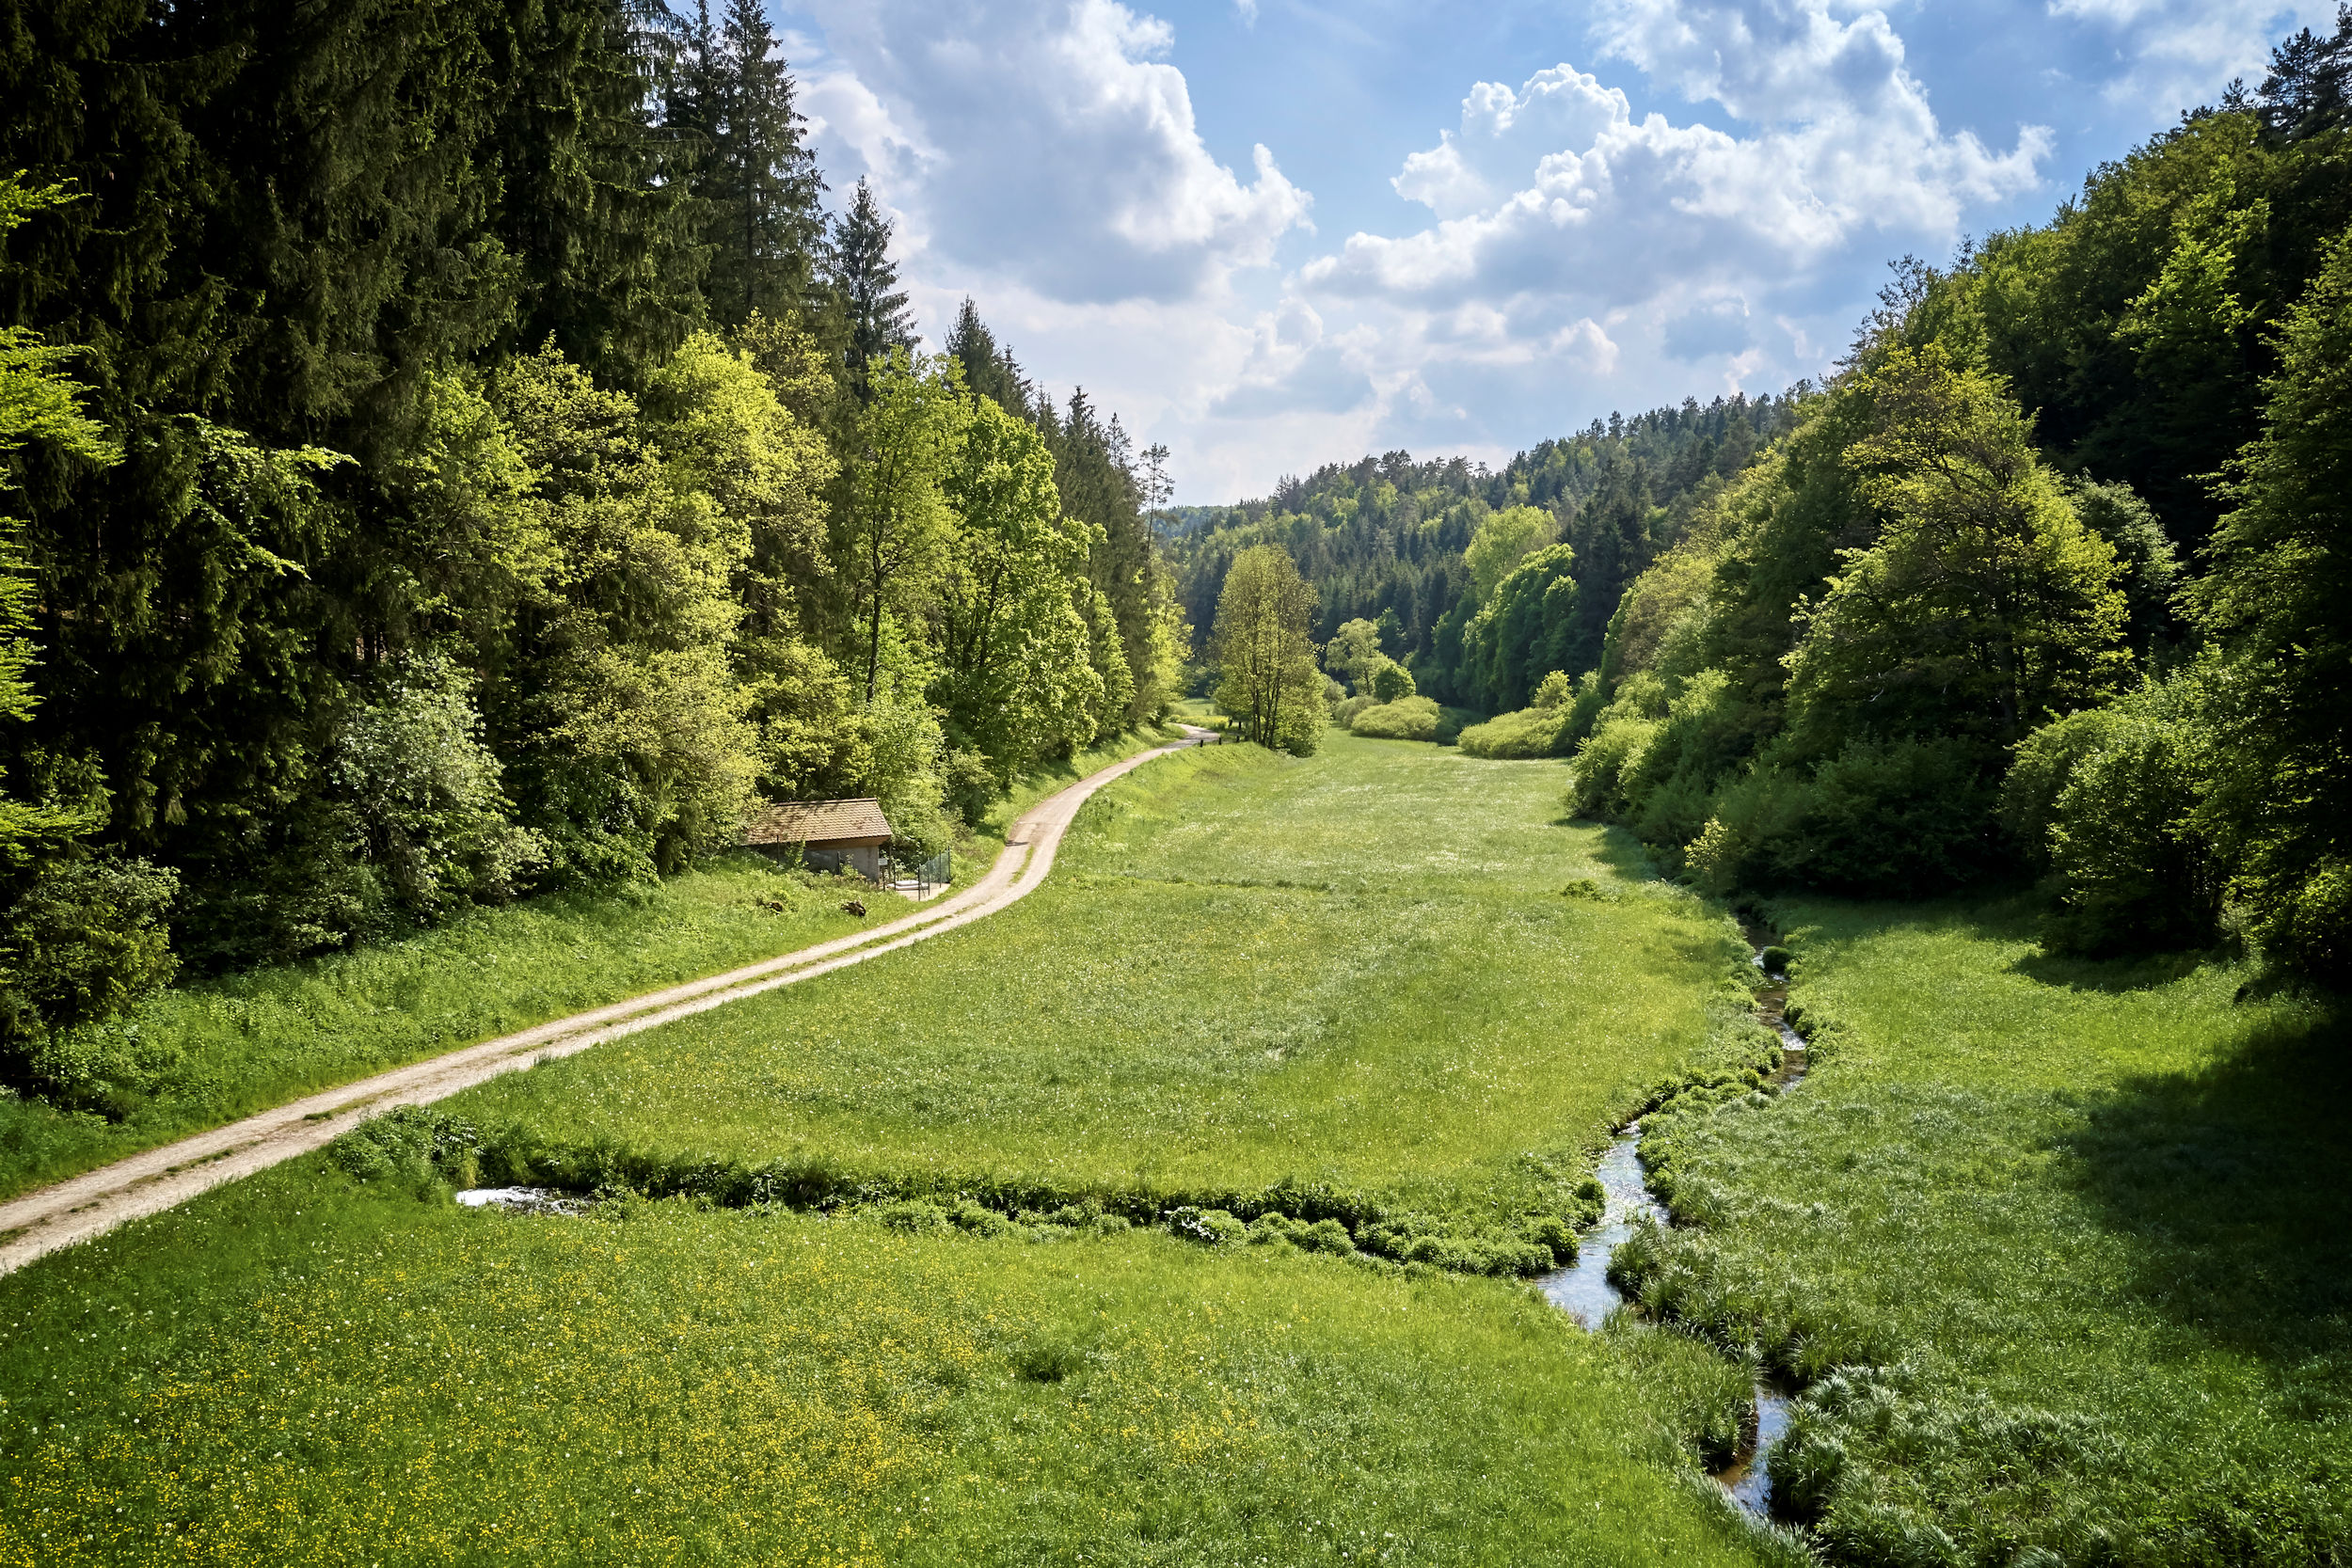 Blick in ein grünes Tal, durch das sich ein Bach sowie ein Wanderweg schlängeln.